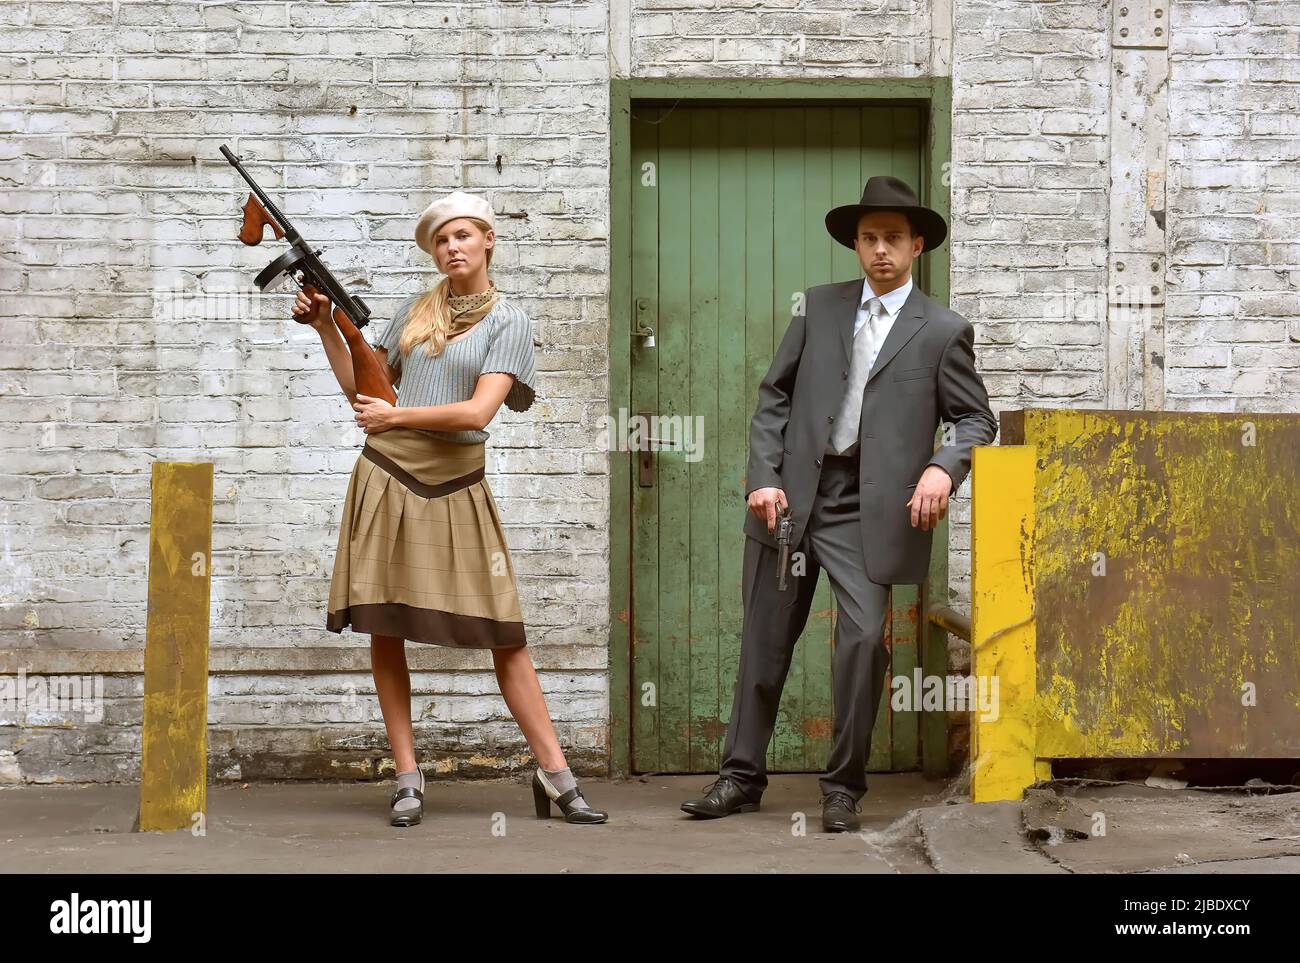 Ein junges Paar verkleidet sich in Vintage-Kleidung im 1930-Stil. Sie tragen jeweils eine Waffe, während sie die Rolle des berühmten Gangsterduos Bonnie und Clyde übernehmen. Stockfoto